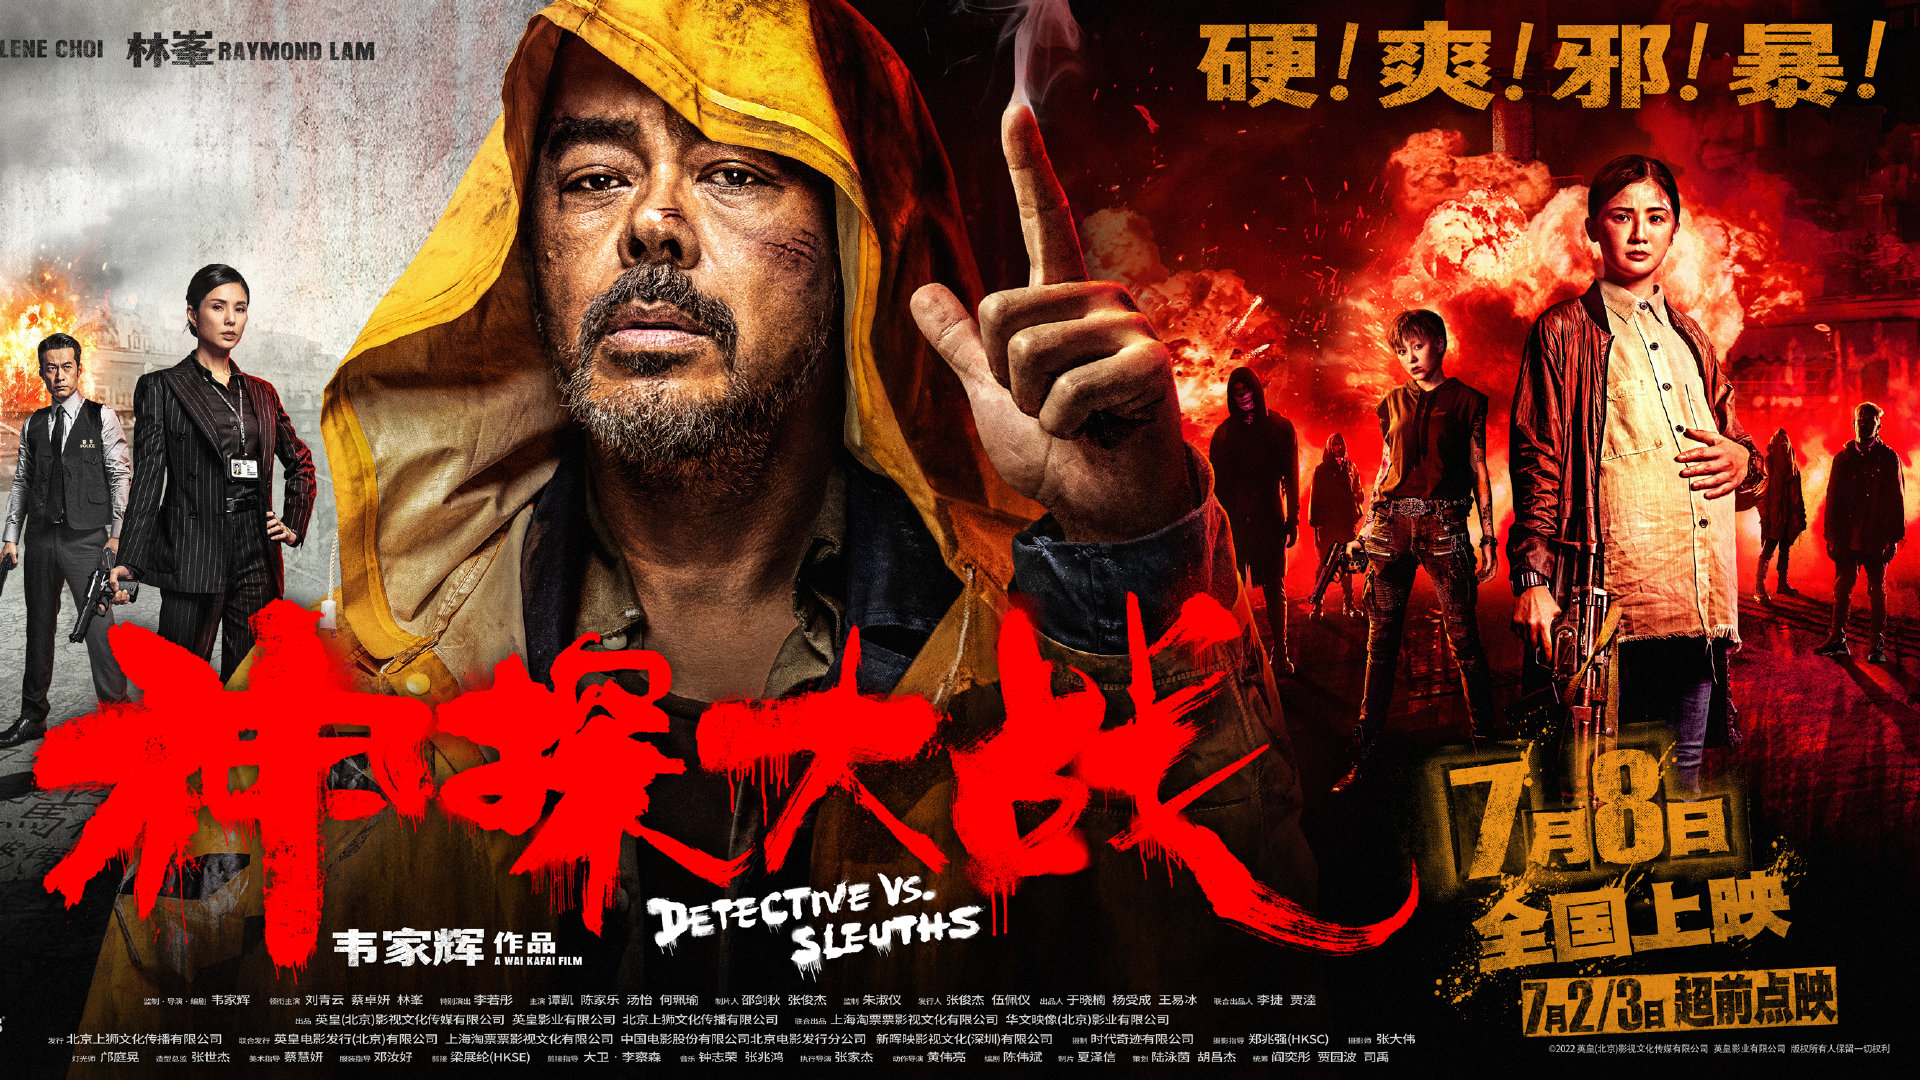 《神探大战》发布粤语版终极预告，来感受原汁原味的港片风格。